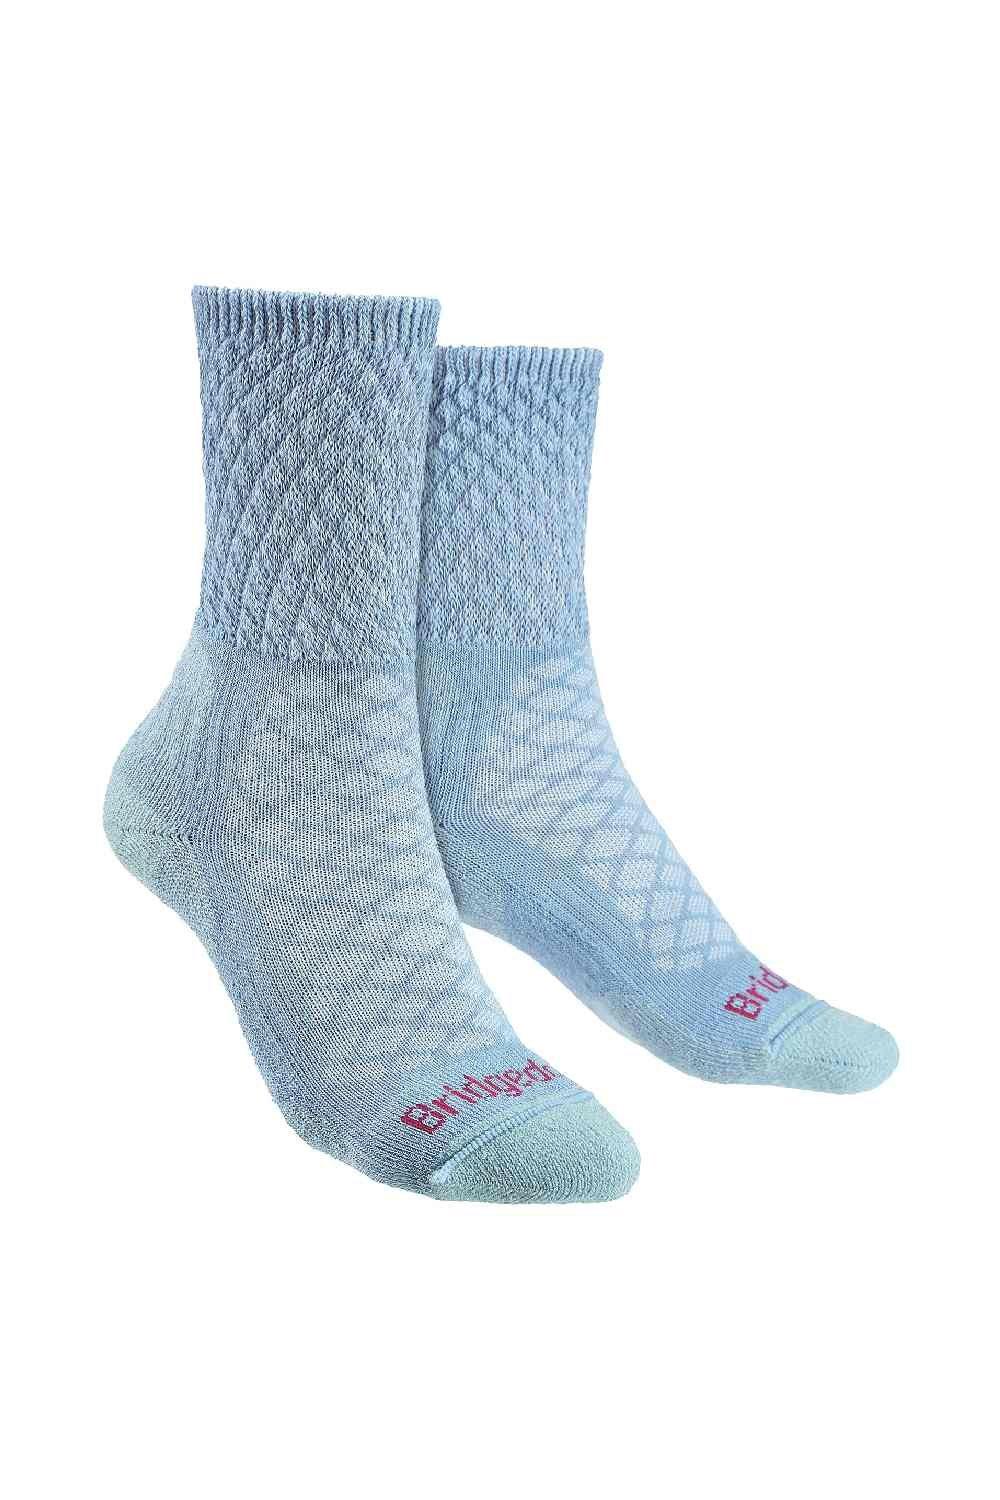 Merino Wool Hiking Lightweight Cushioned Boot Socks